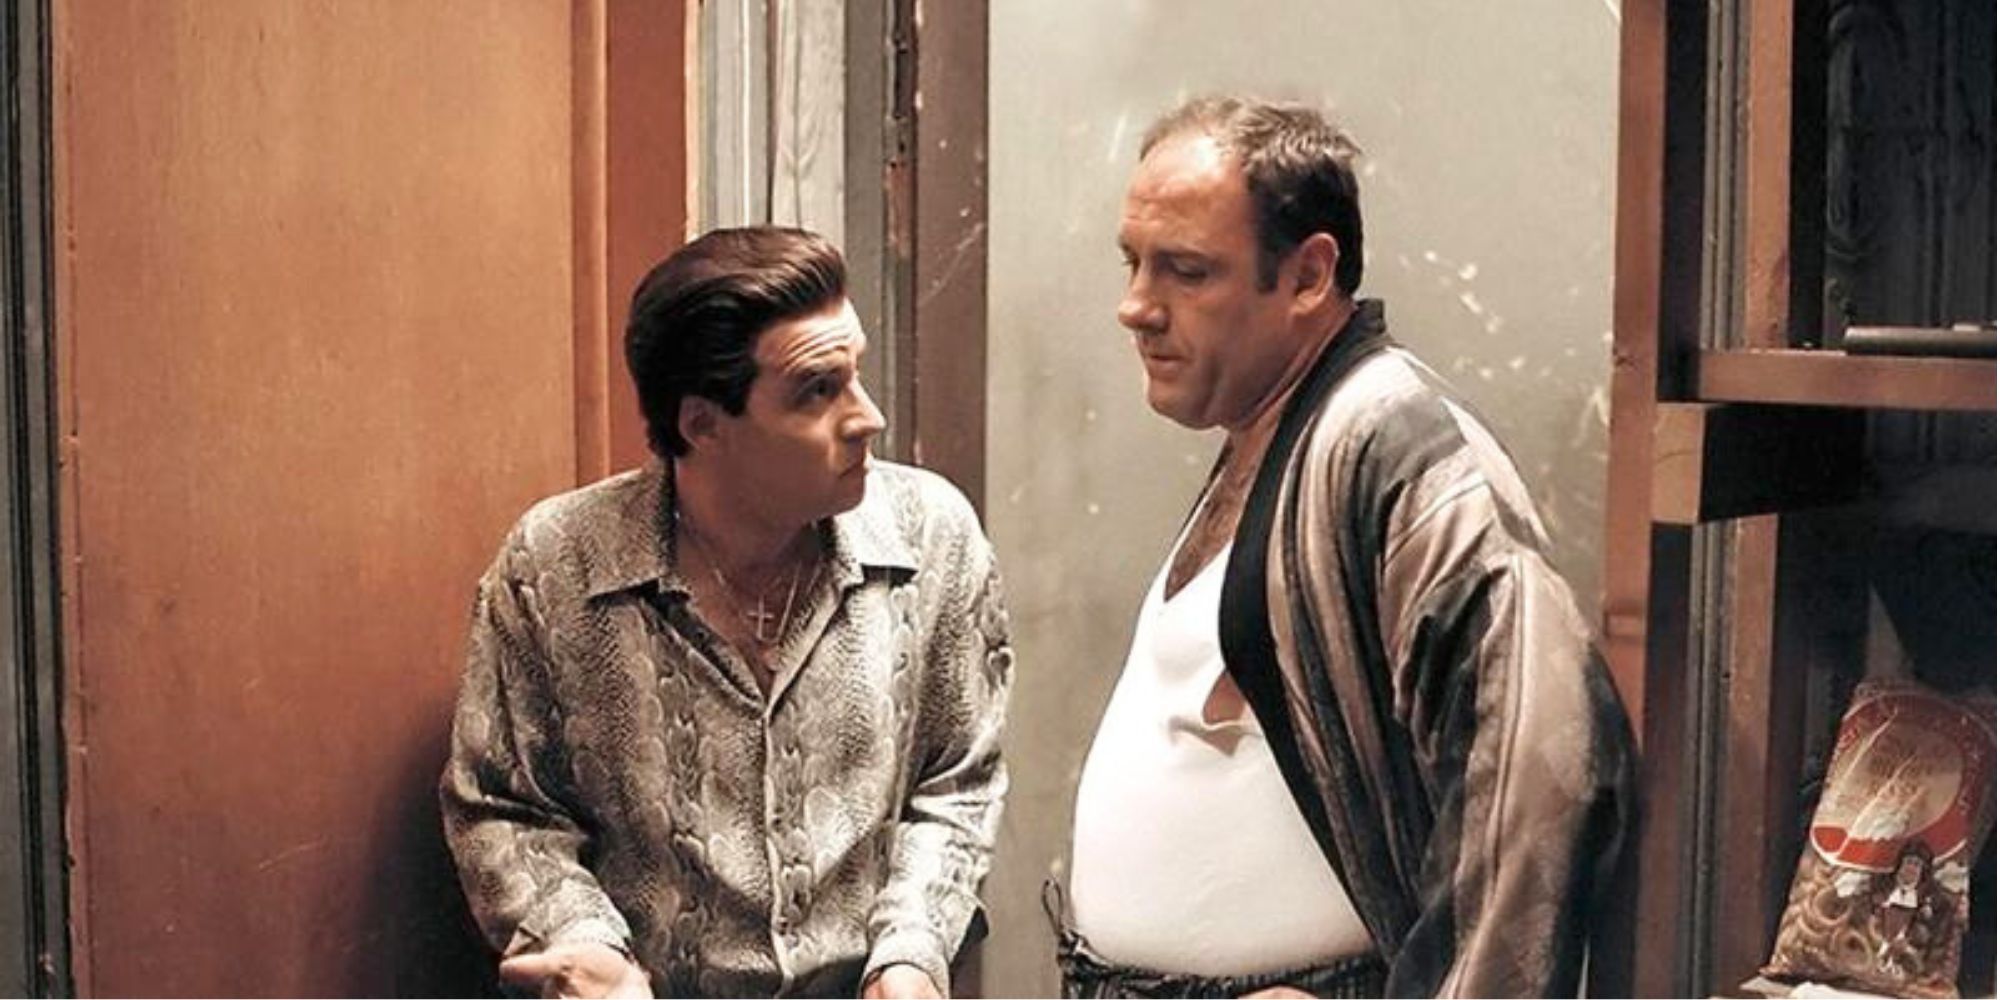 Steven Van Zandt talking to James Gandolfini in The Sopranos